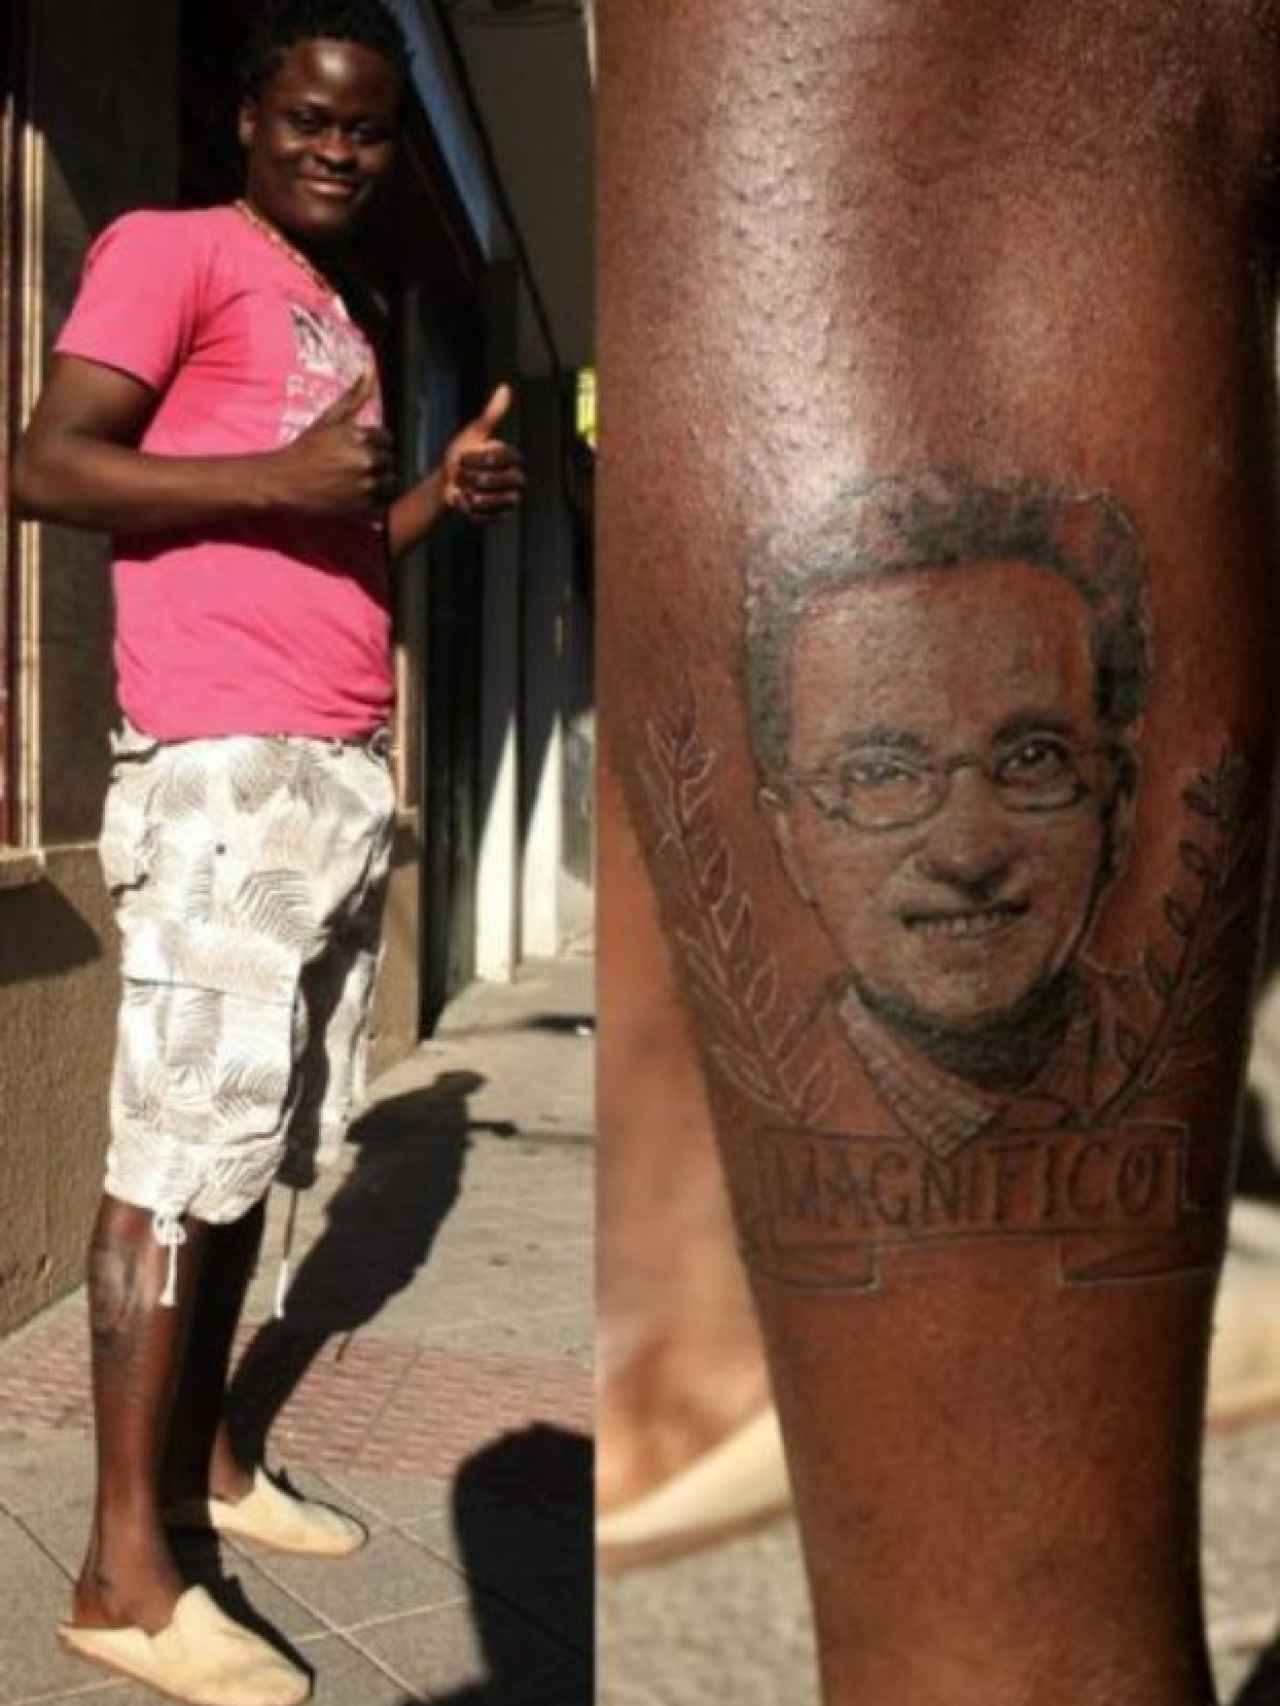 Hace unos años, un hombre se tatuó la cara de Jordi Hurtado en la pierna.